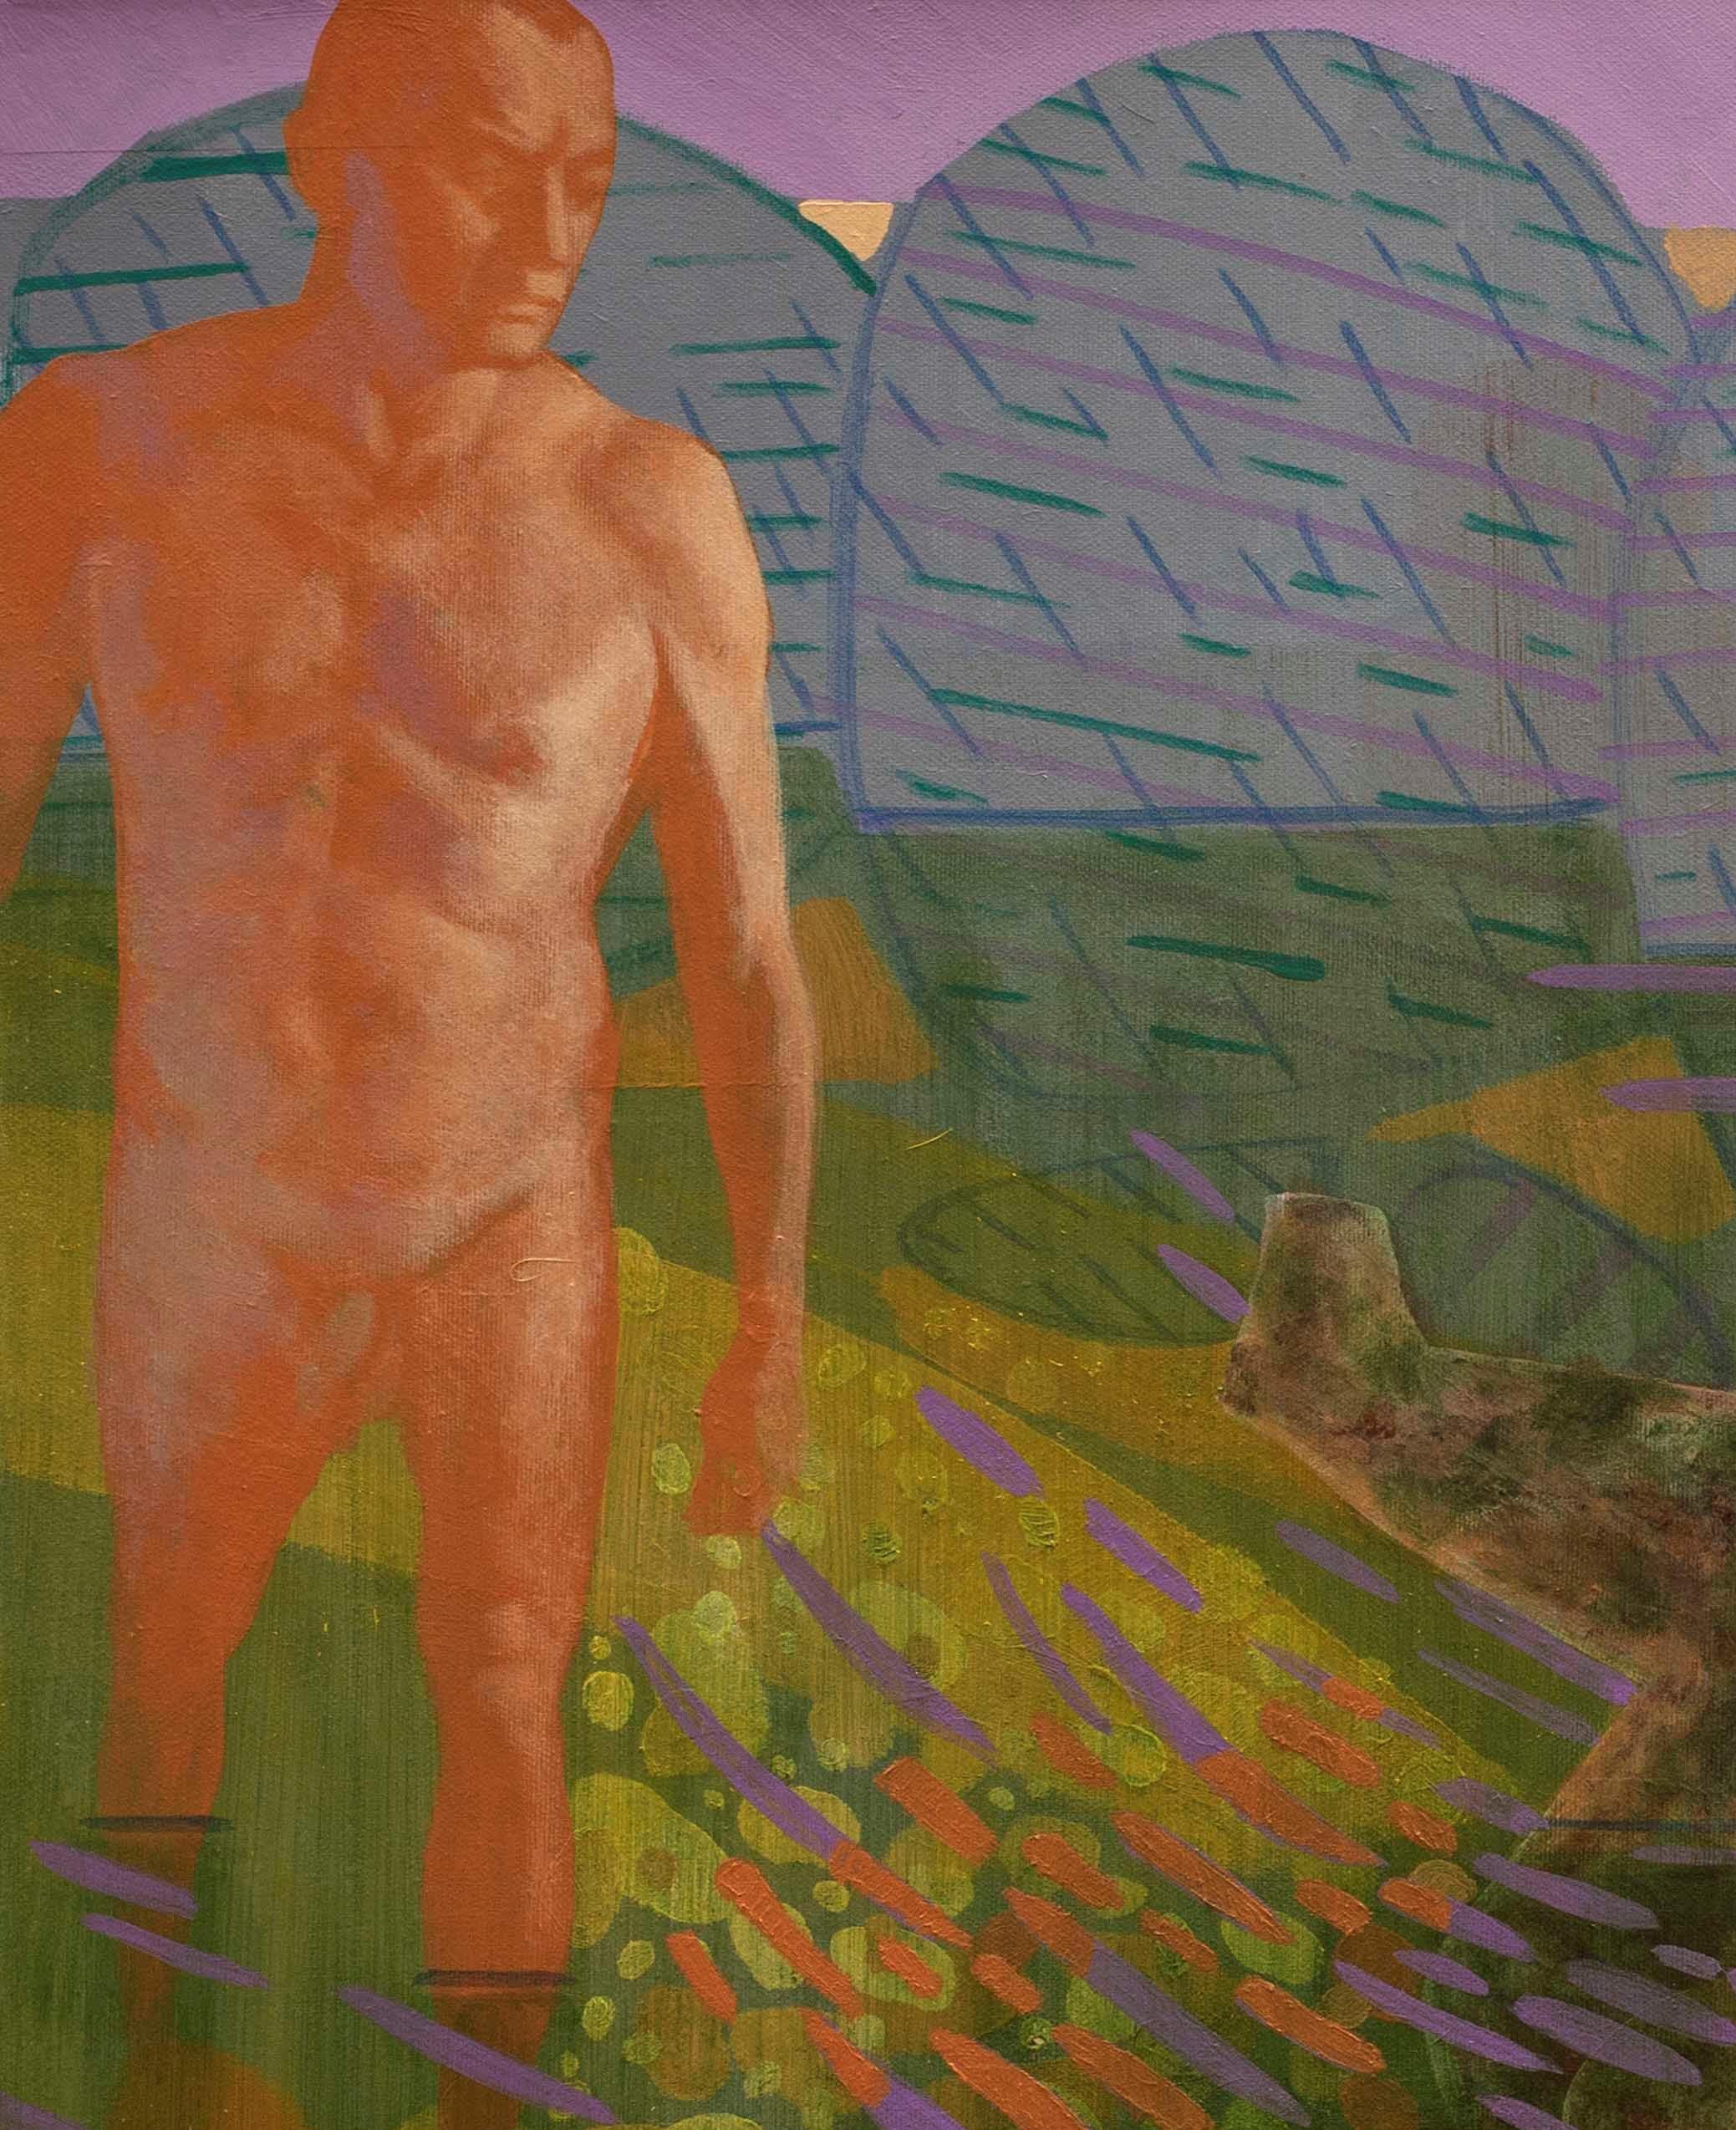 Idol Idols Camouflage von Tide - Zeitgenössische Kunst, Nackt, männlich, grün, orange – Painting von Alexandru Rădvan